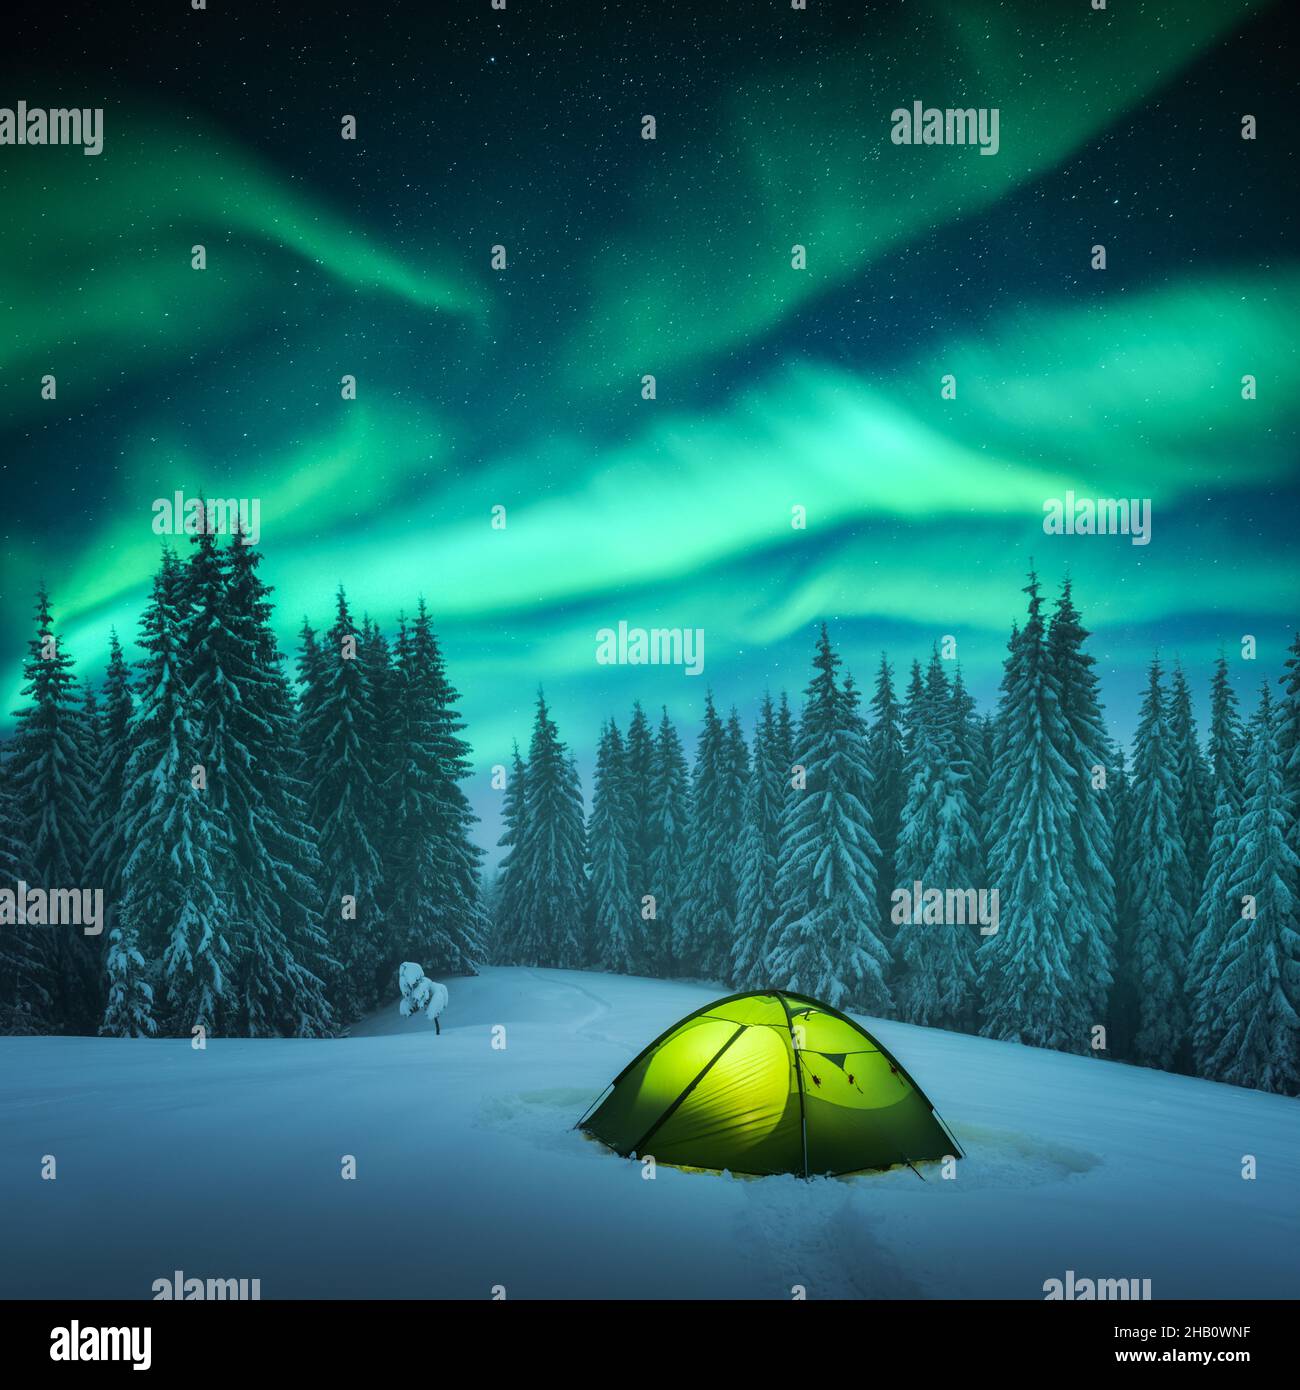 Tenda gialla illuminata dall'interno sullo sfondo di un incredibile cielo stellato con aurora boreale. Panorama notturno incredibile. Aurora boreale in campo invernale Foto Stock